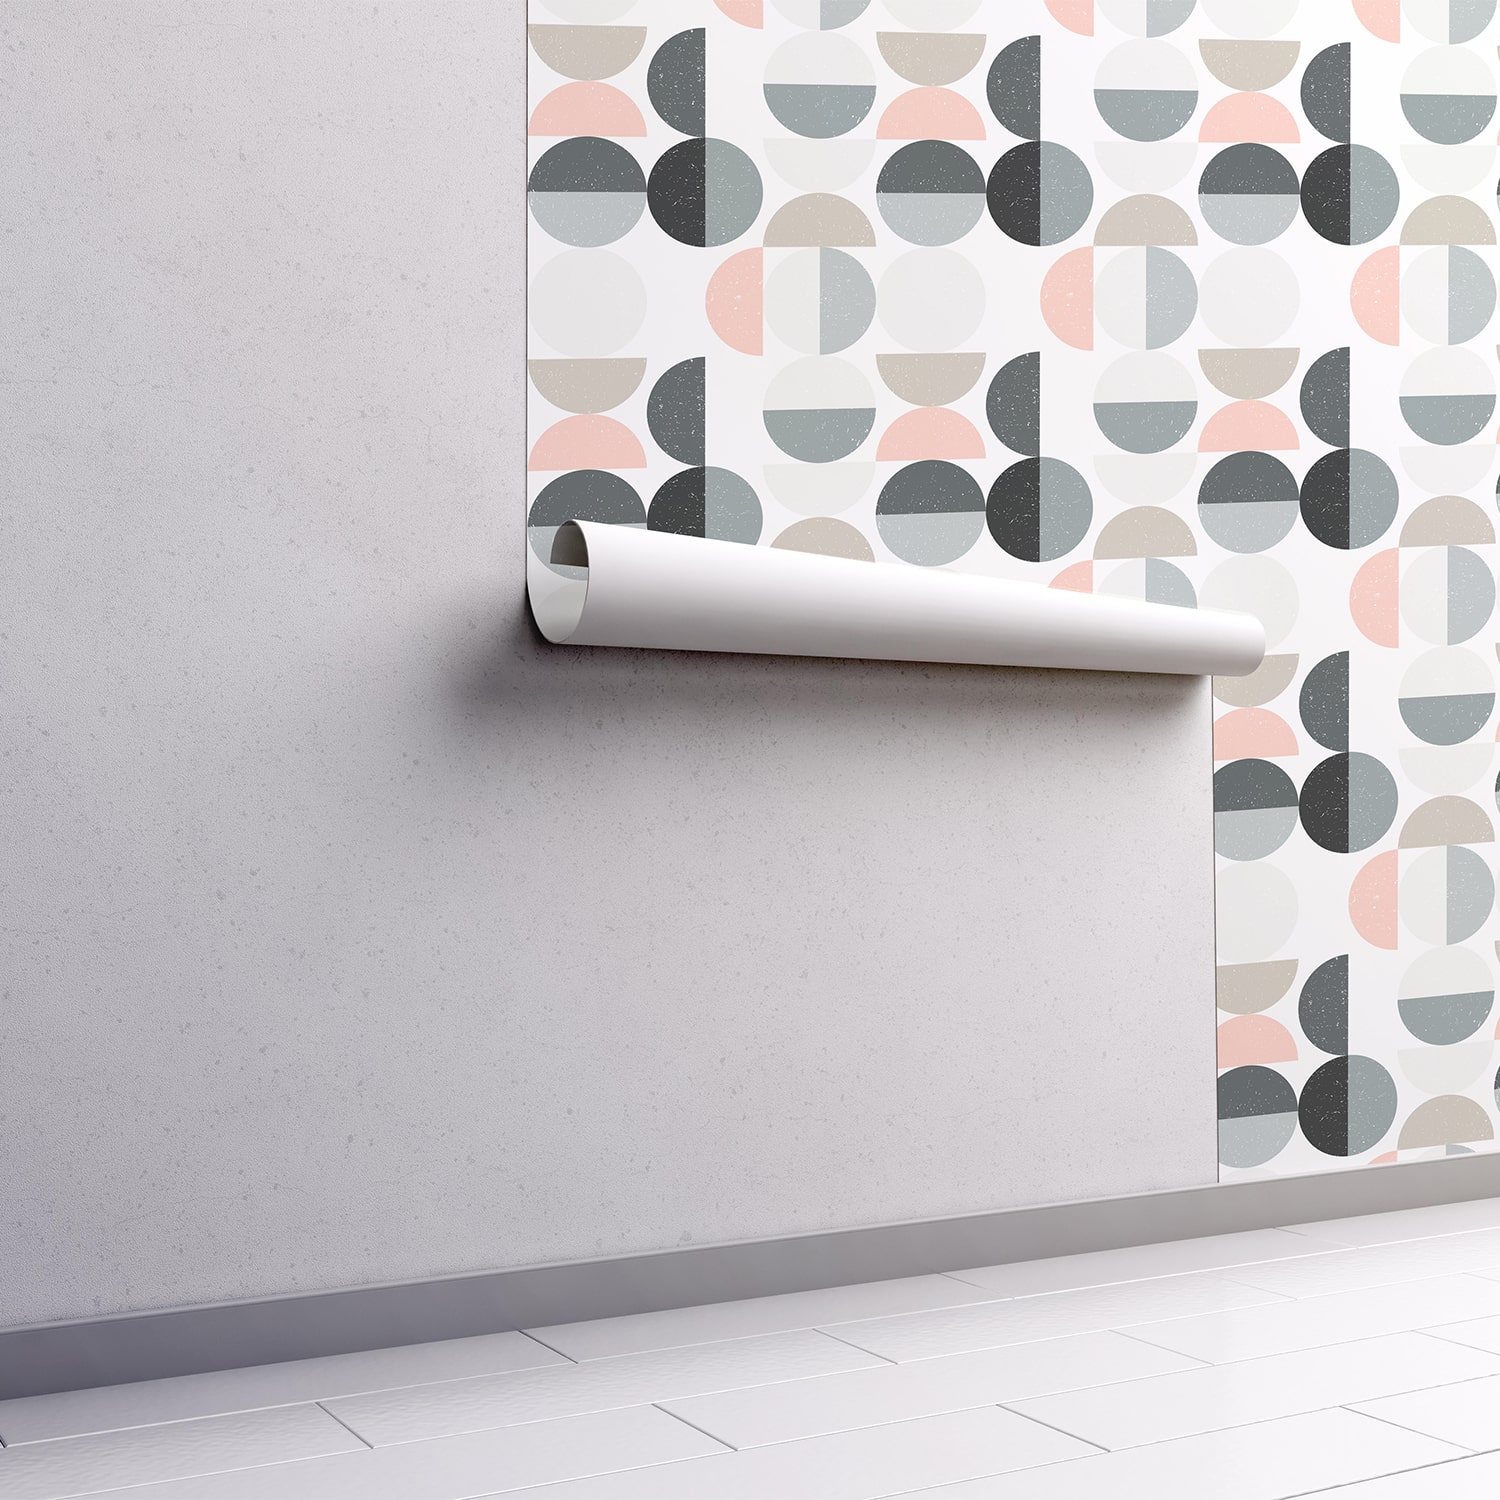 PP42-mur.rouleau-papier-peint-adhesif-decoratif-revetement-vinyle-demi-rond-renovation-meuble-mur-min